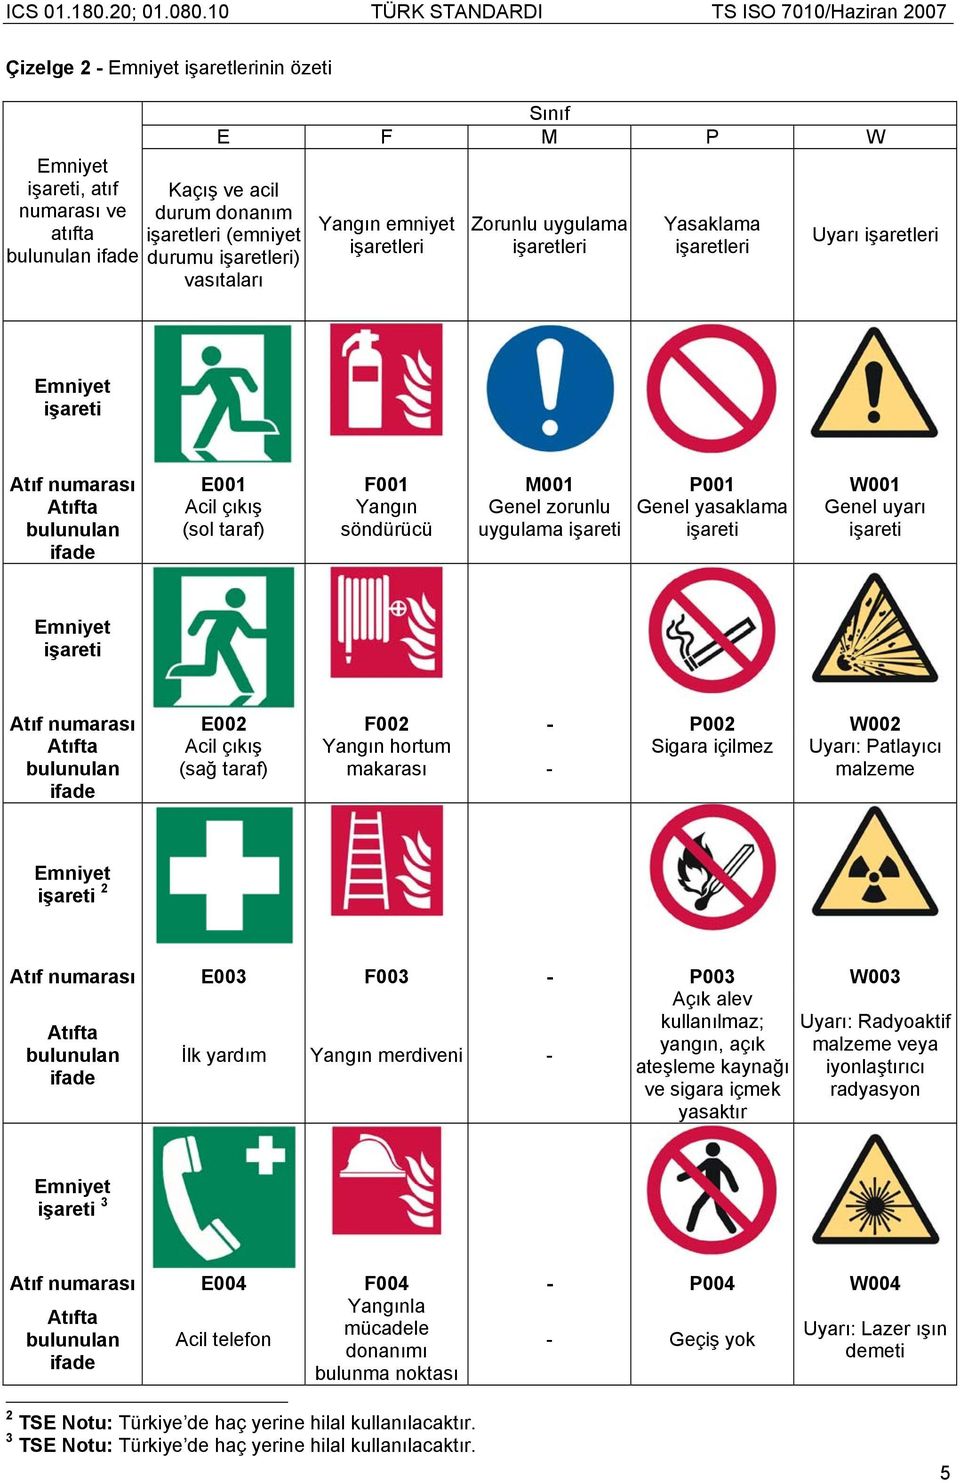 işareti Genel yasaklama işareti Genel uyarı işareti Emniyet işareti Atıf numarası E002 F002 - P002 W002 Acil çıkış (sağ taraf) Yangın hortum makarası - Sigara içilmez Uyarı: Patlayıcı malzeme Emniyet